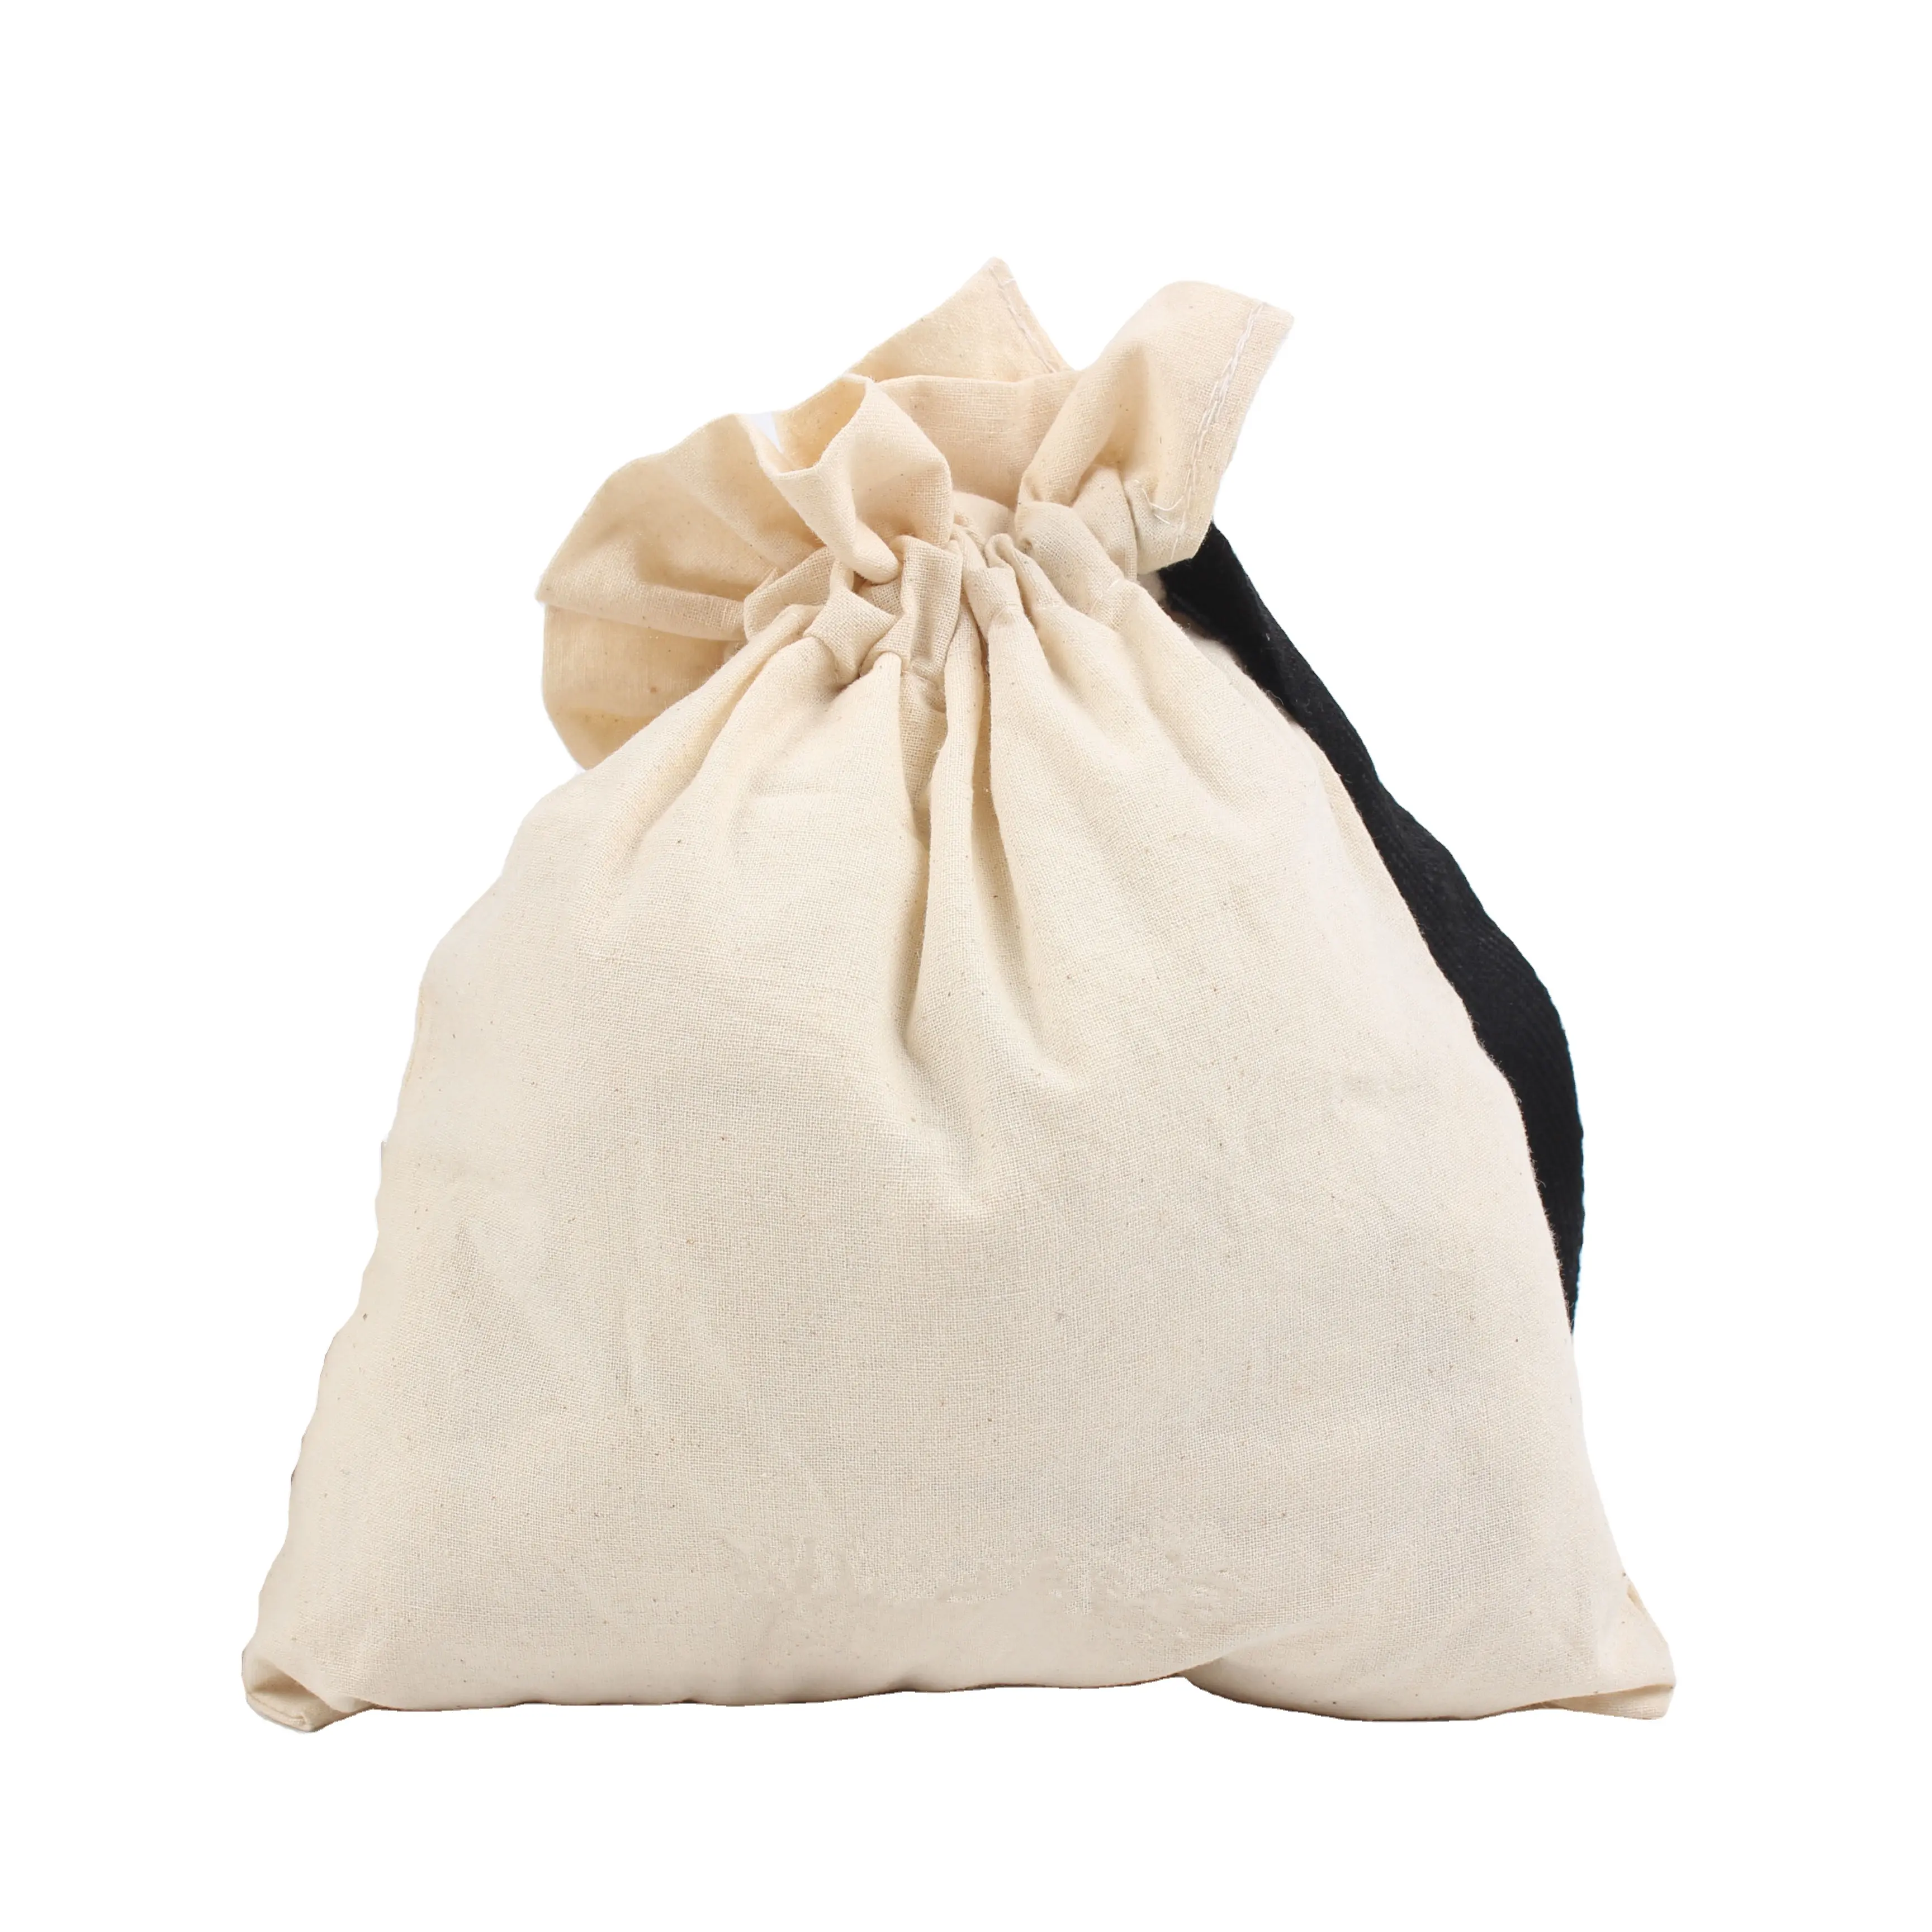 कस्टम लोगो व्यक्तिगत रंगीन नरम कपड़े कैलिको कैनवास सूती ड्रॉस्ट्रिंग बैग के साथ डबल स्ट्रिंग के साथ